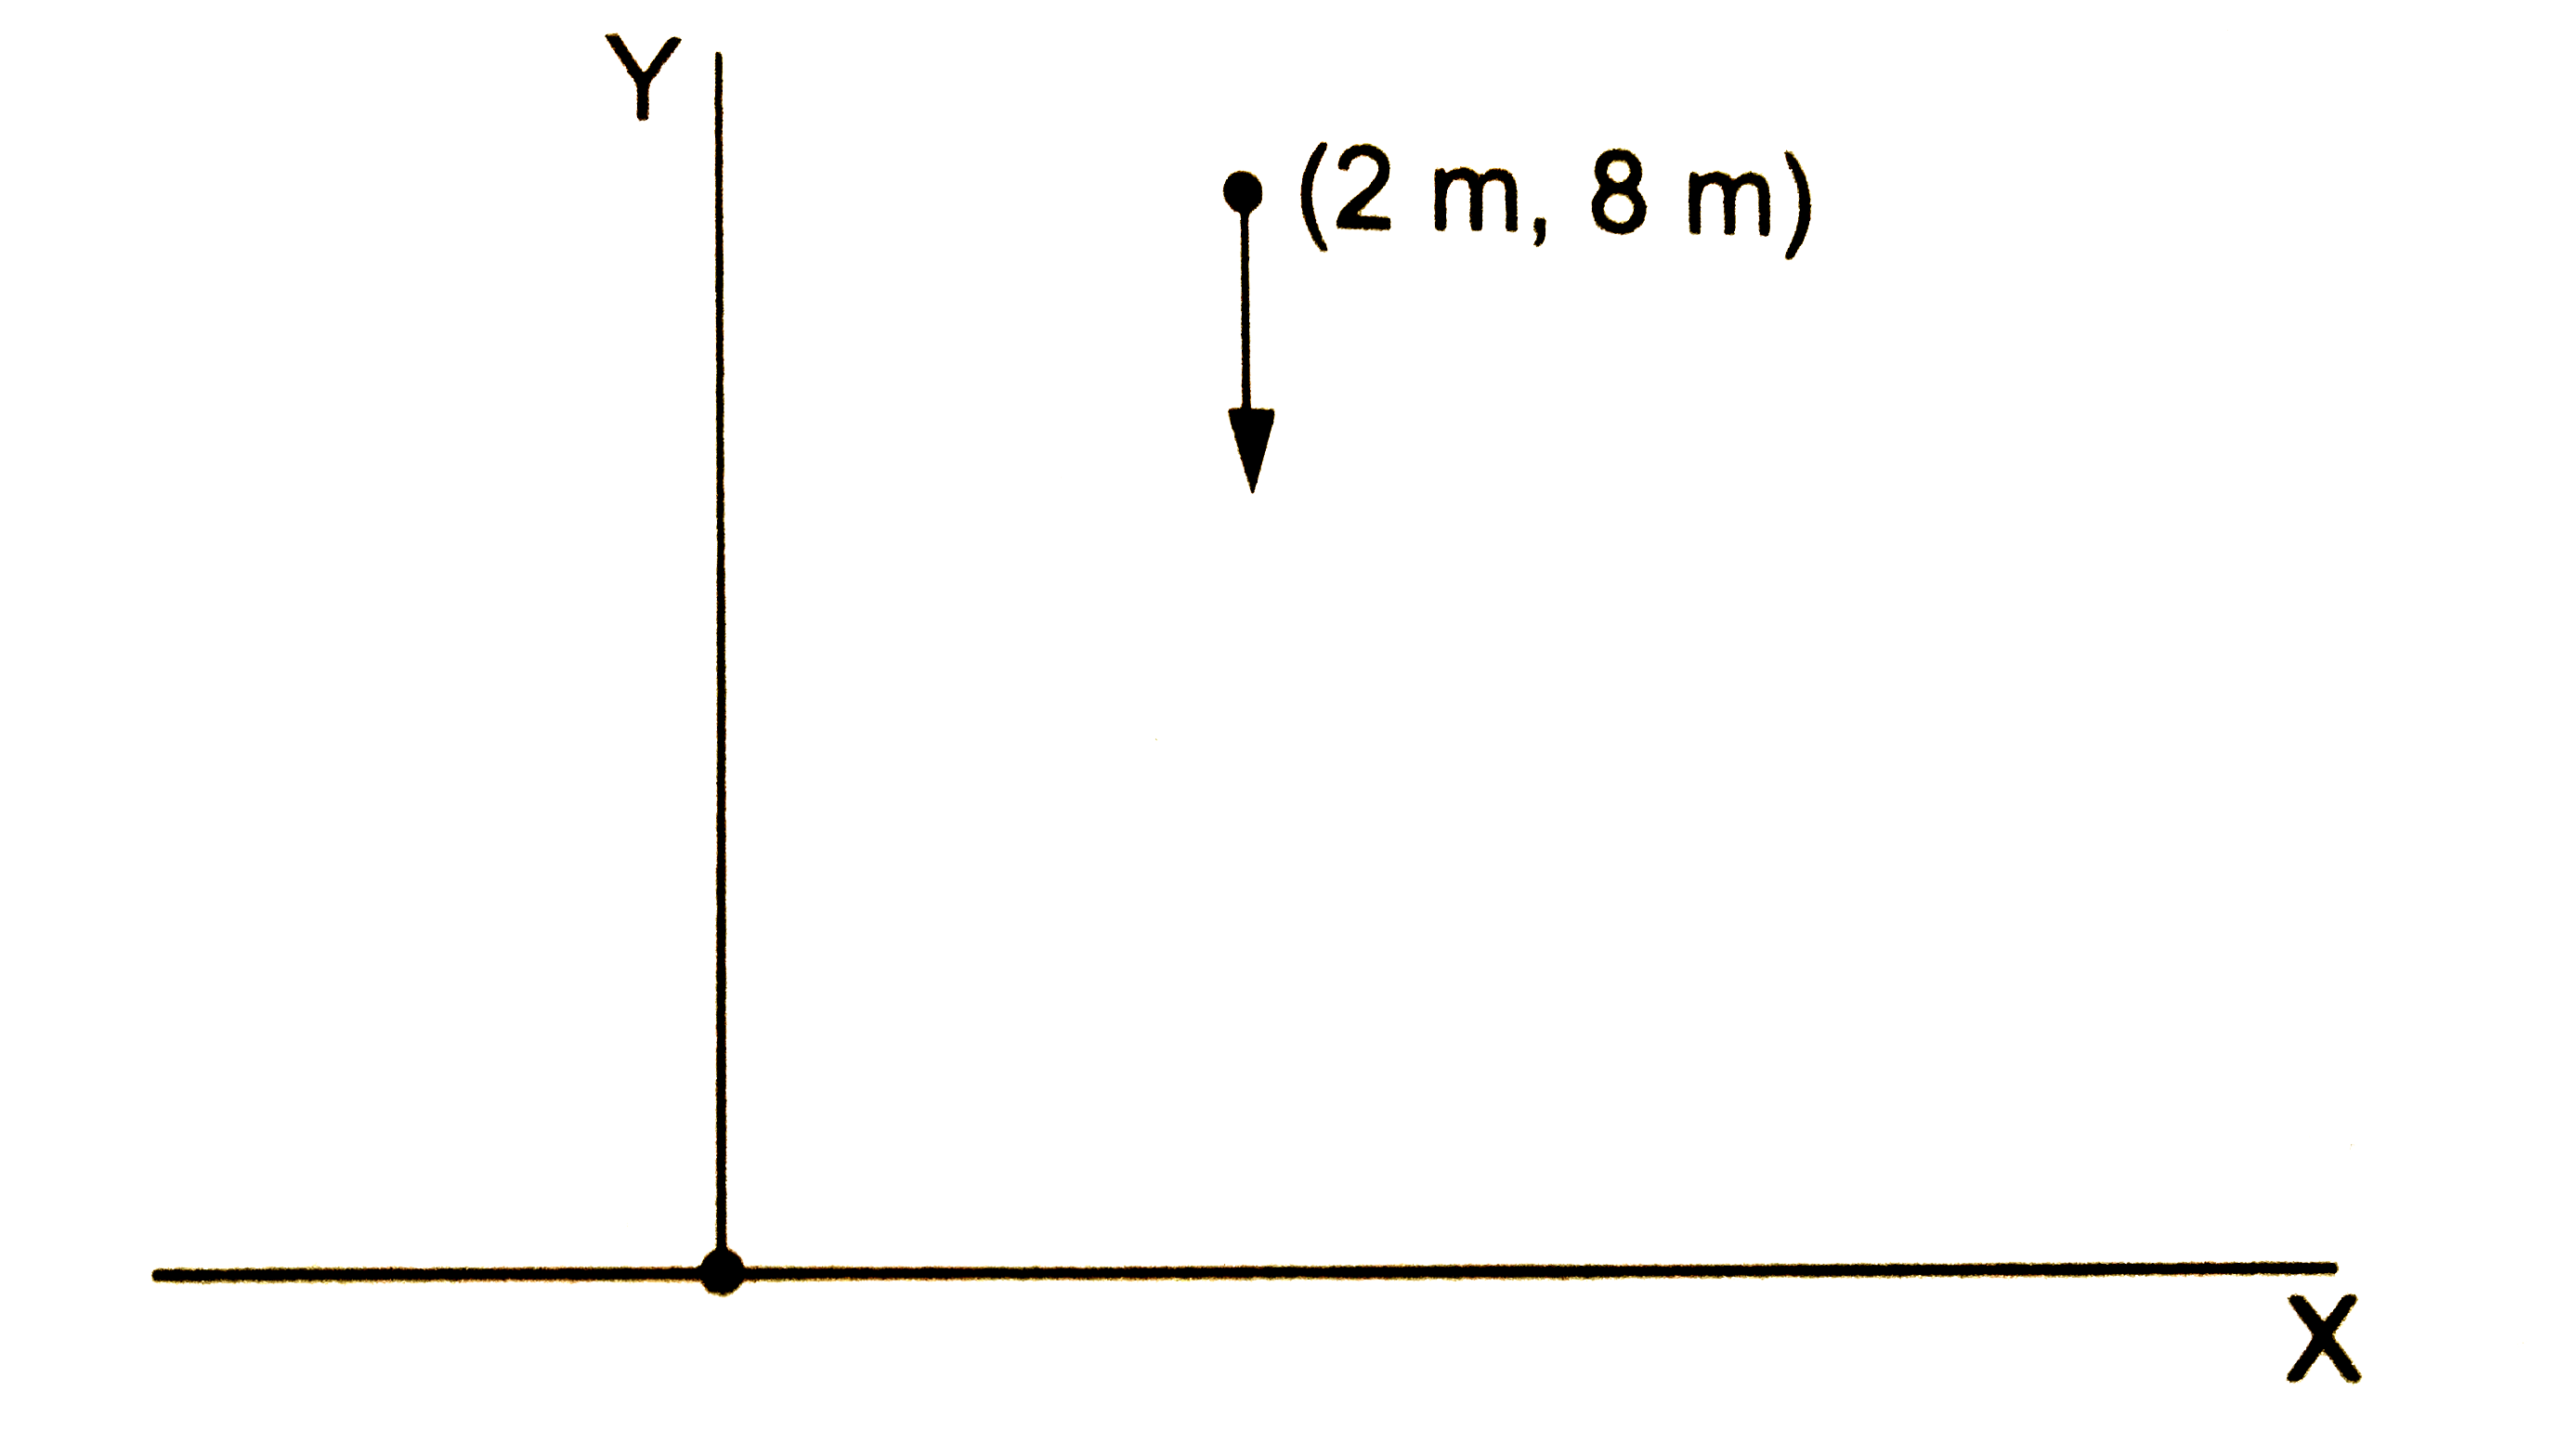 एक कण जिसका द्रव्यमान 20 g है बिंदु (2 m, 8 m) से, विरामावस्था से गिराया जाता है | यहाँ y-अक्ष ऊपर कि ओर ऊर्ध्वाधर दिशा में लिया गया है (चित्र 16.8) | एक सेकंड बाद मूलबिंदु के प्रति कण का कोणीय संवेग निकालें g=10 m//s^(2) लें |